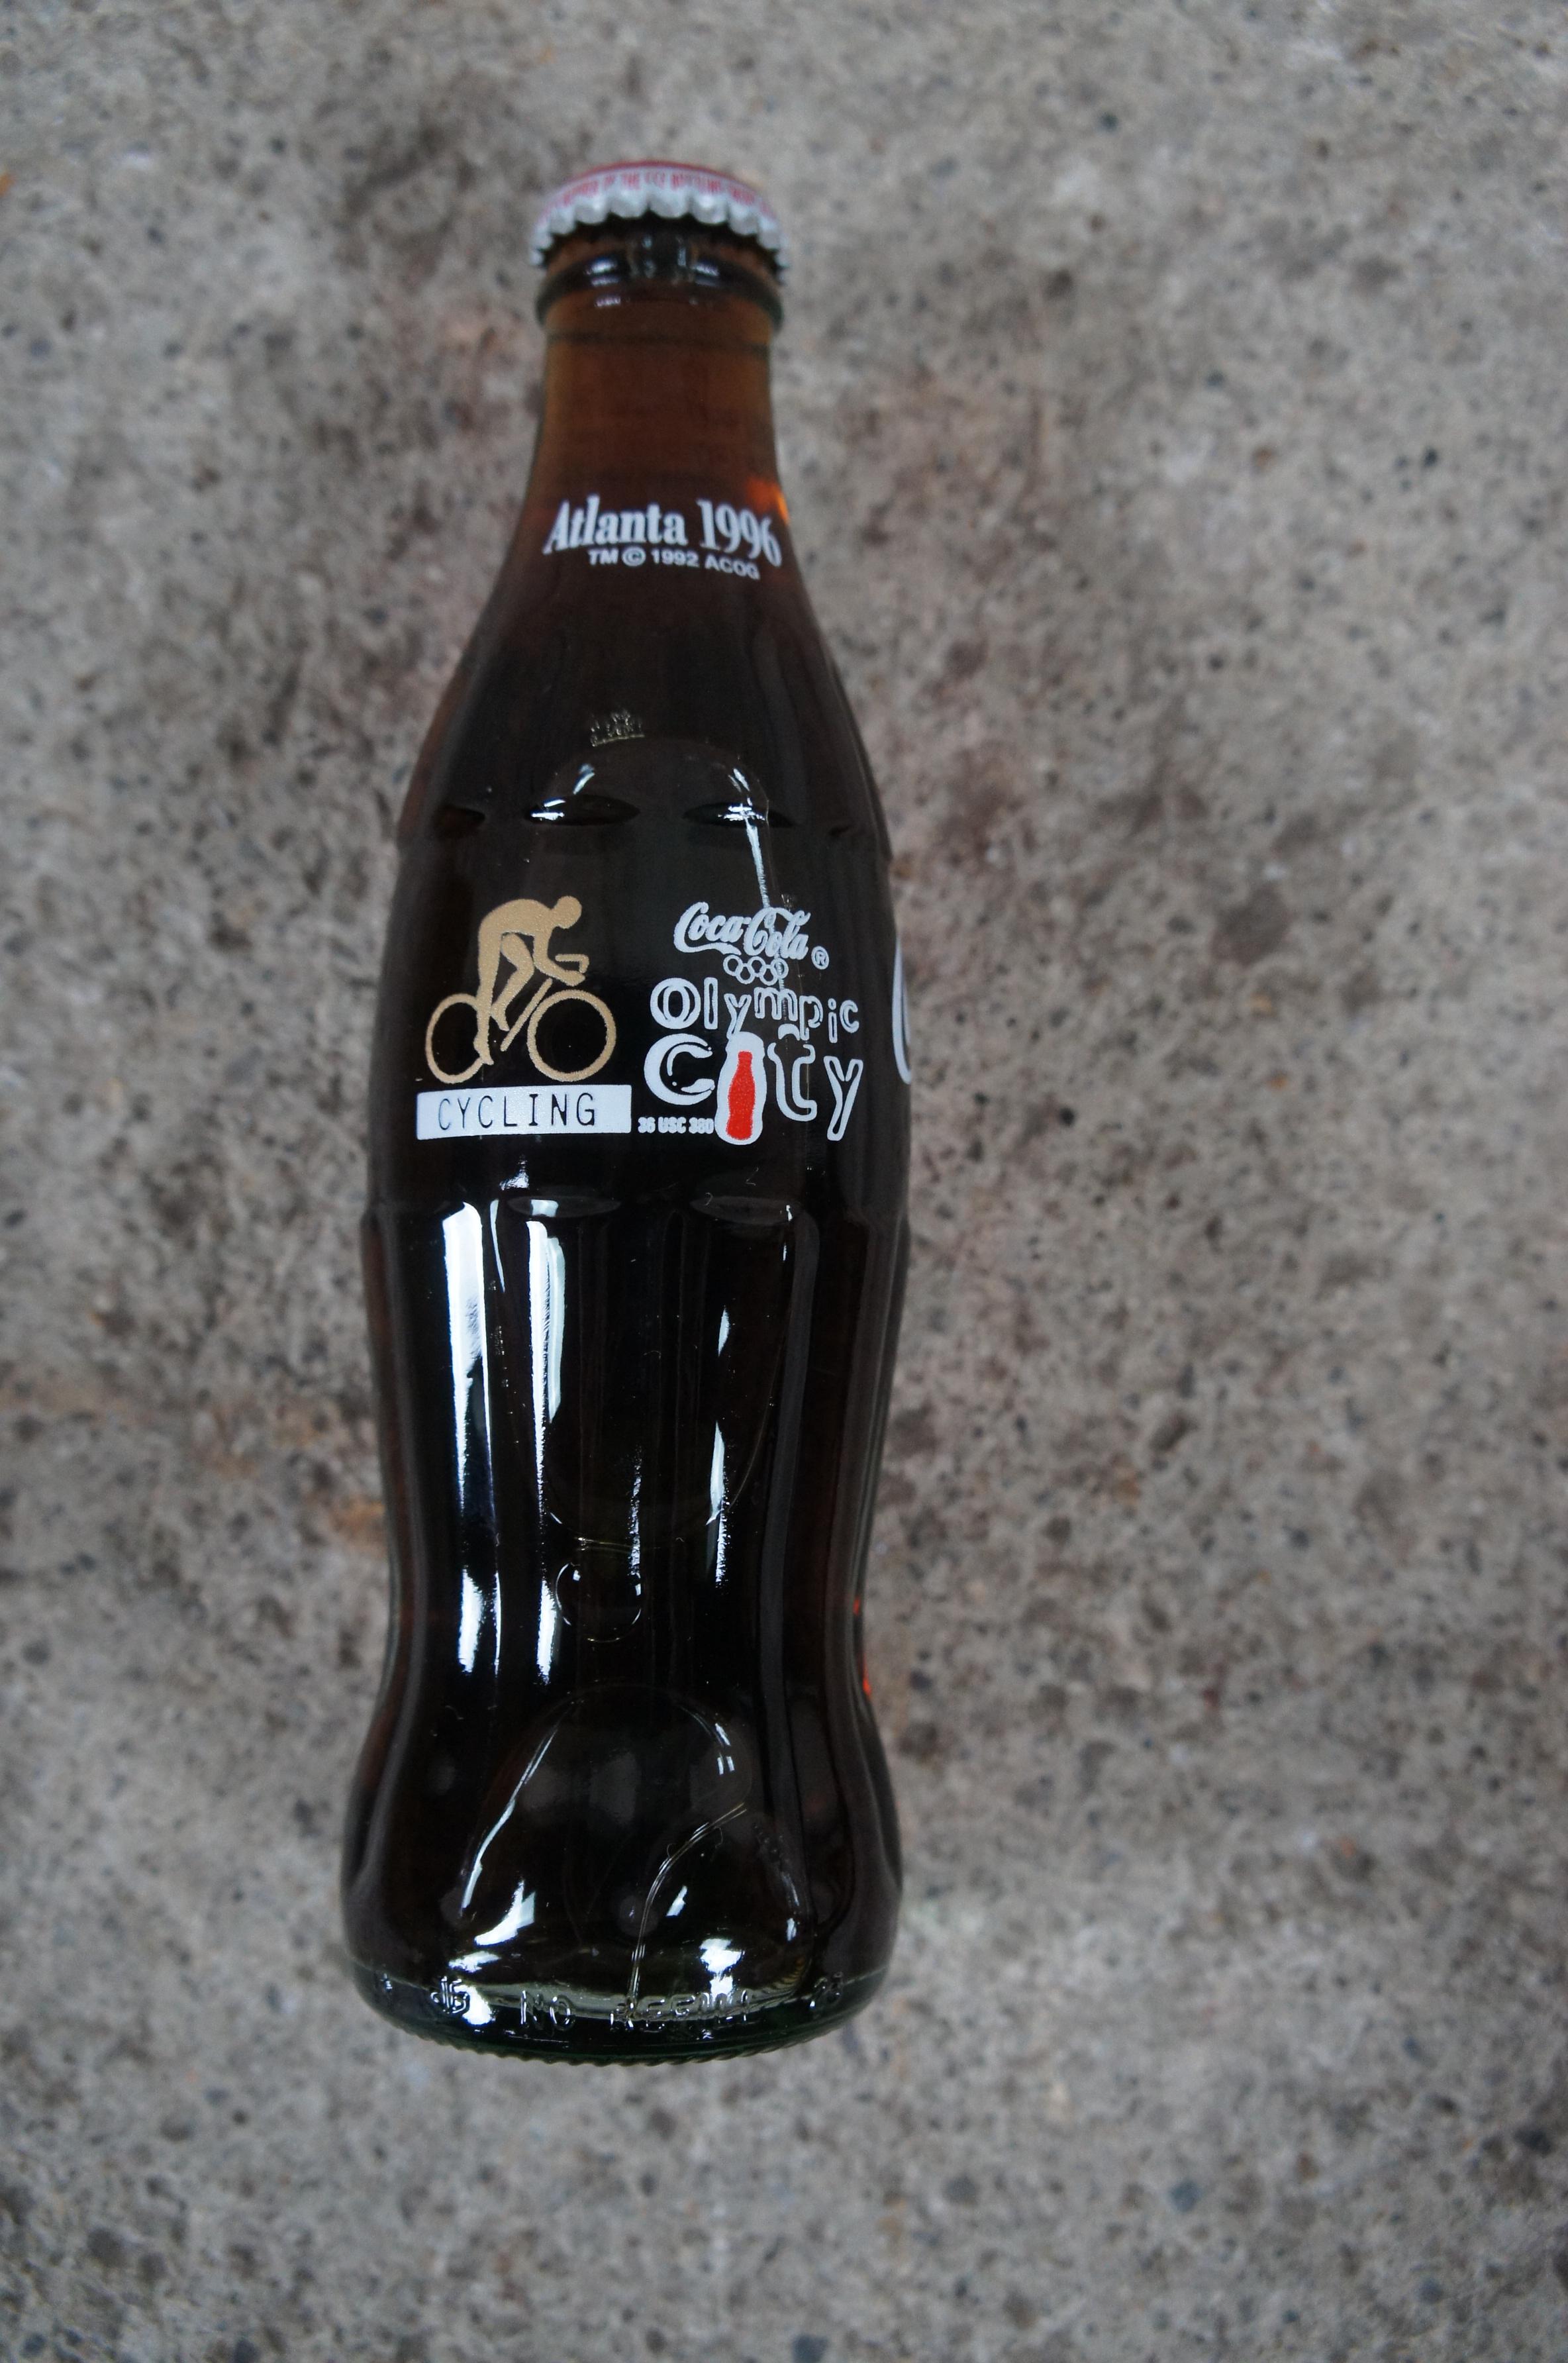 Vintage Coca Cola 1996 Olympic City Complete Collectors Coke Bottle Set 15